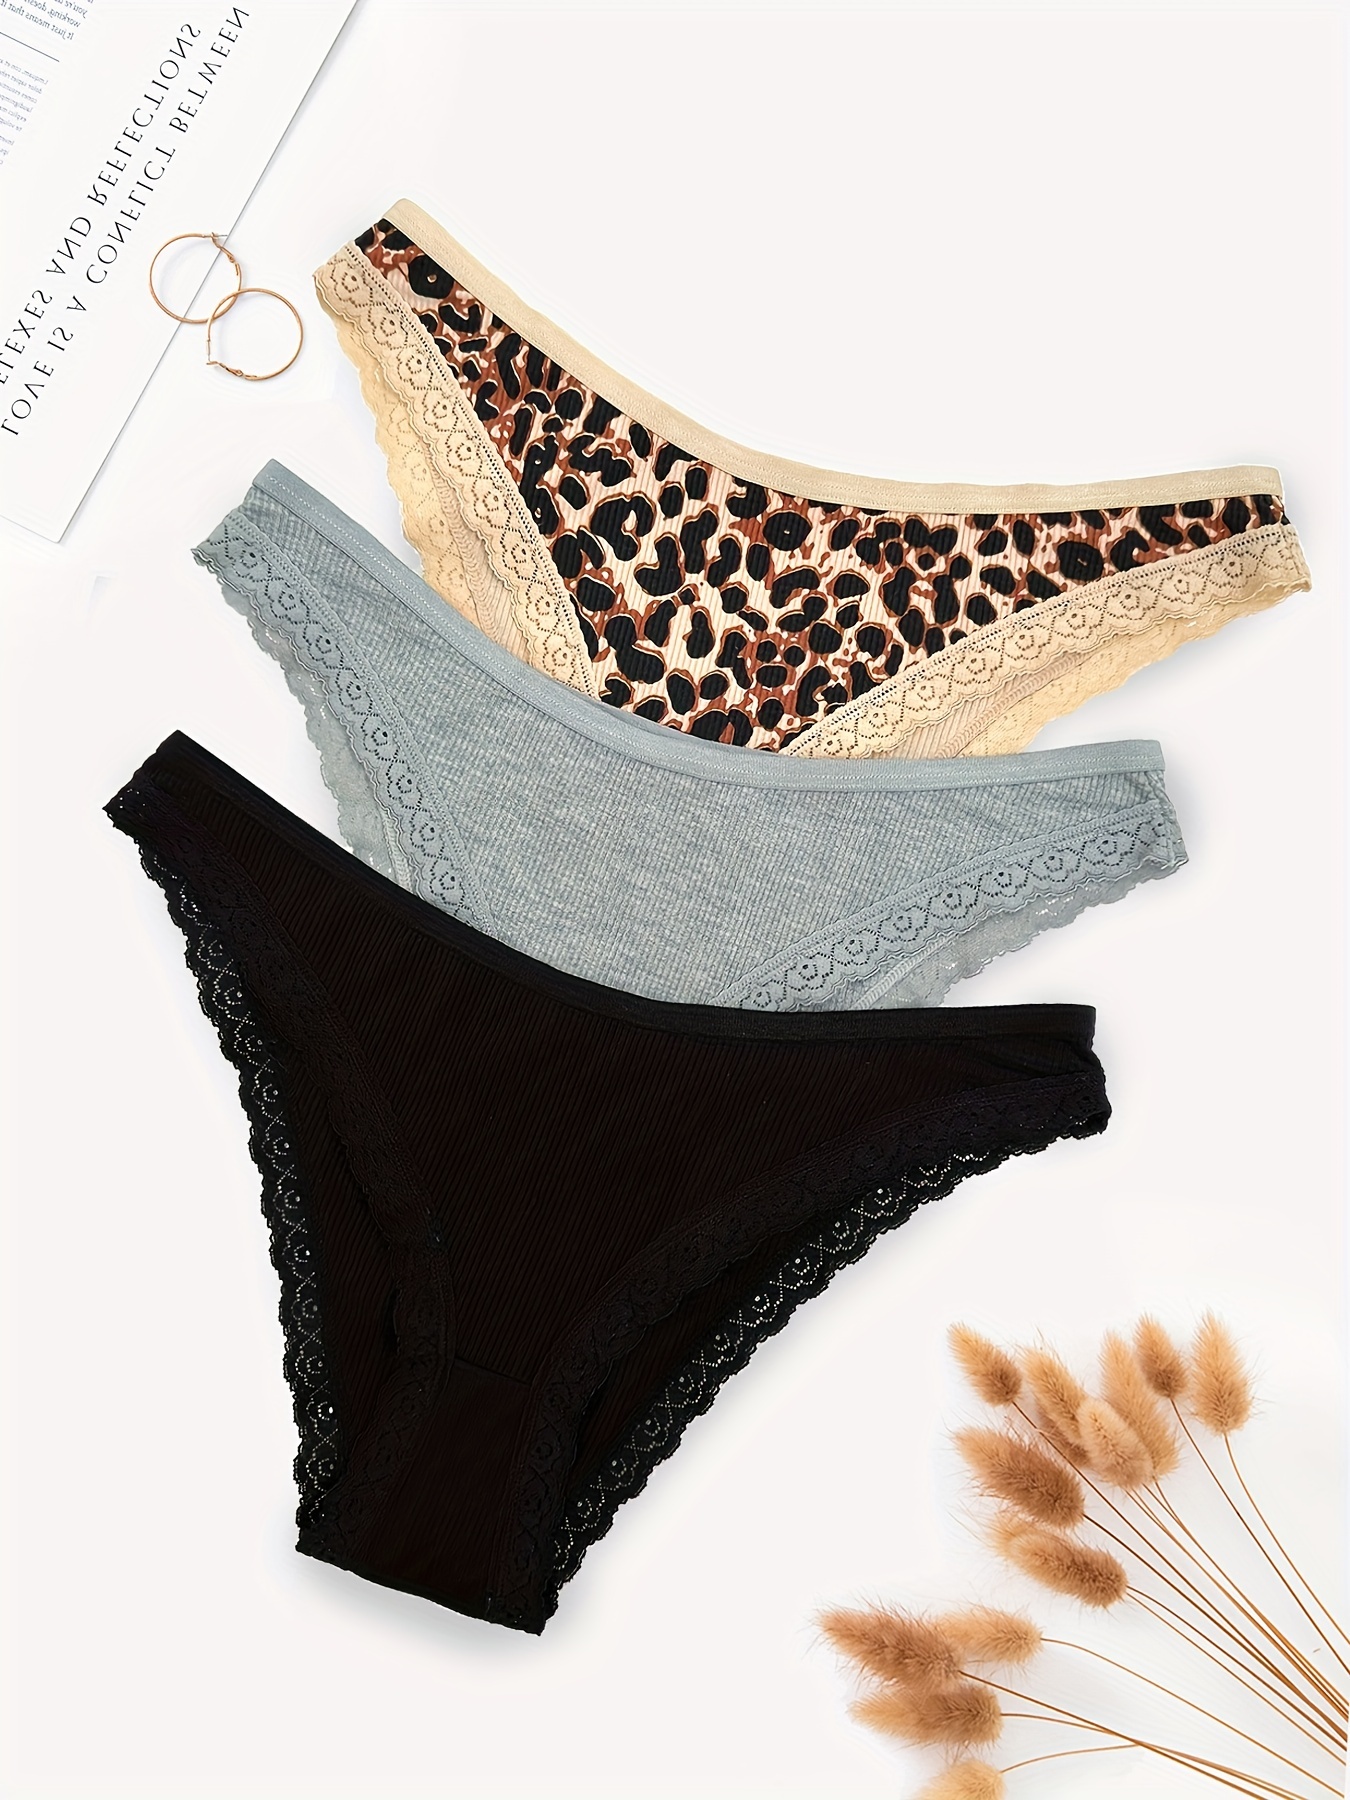 3pcs Lace Trim Briefs, Comfy & Breathable Stretchy Intimates Panties,  Women's Lingerie & Underwear